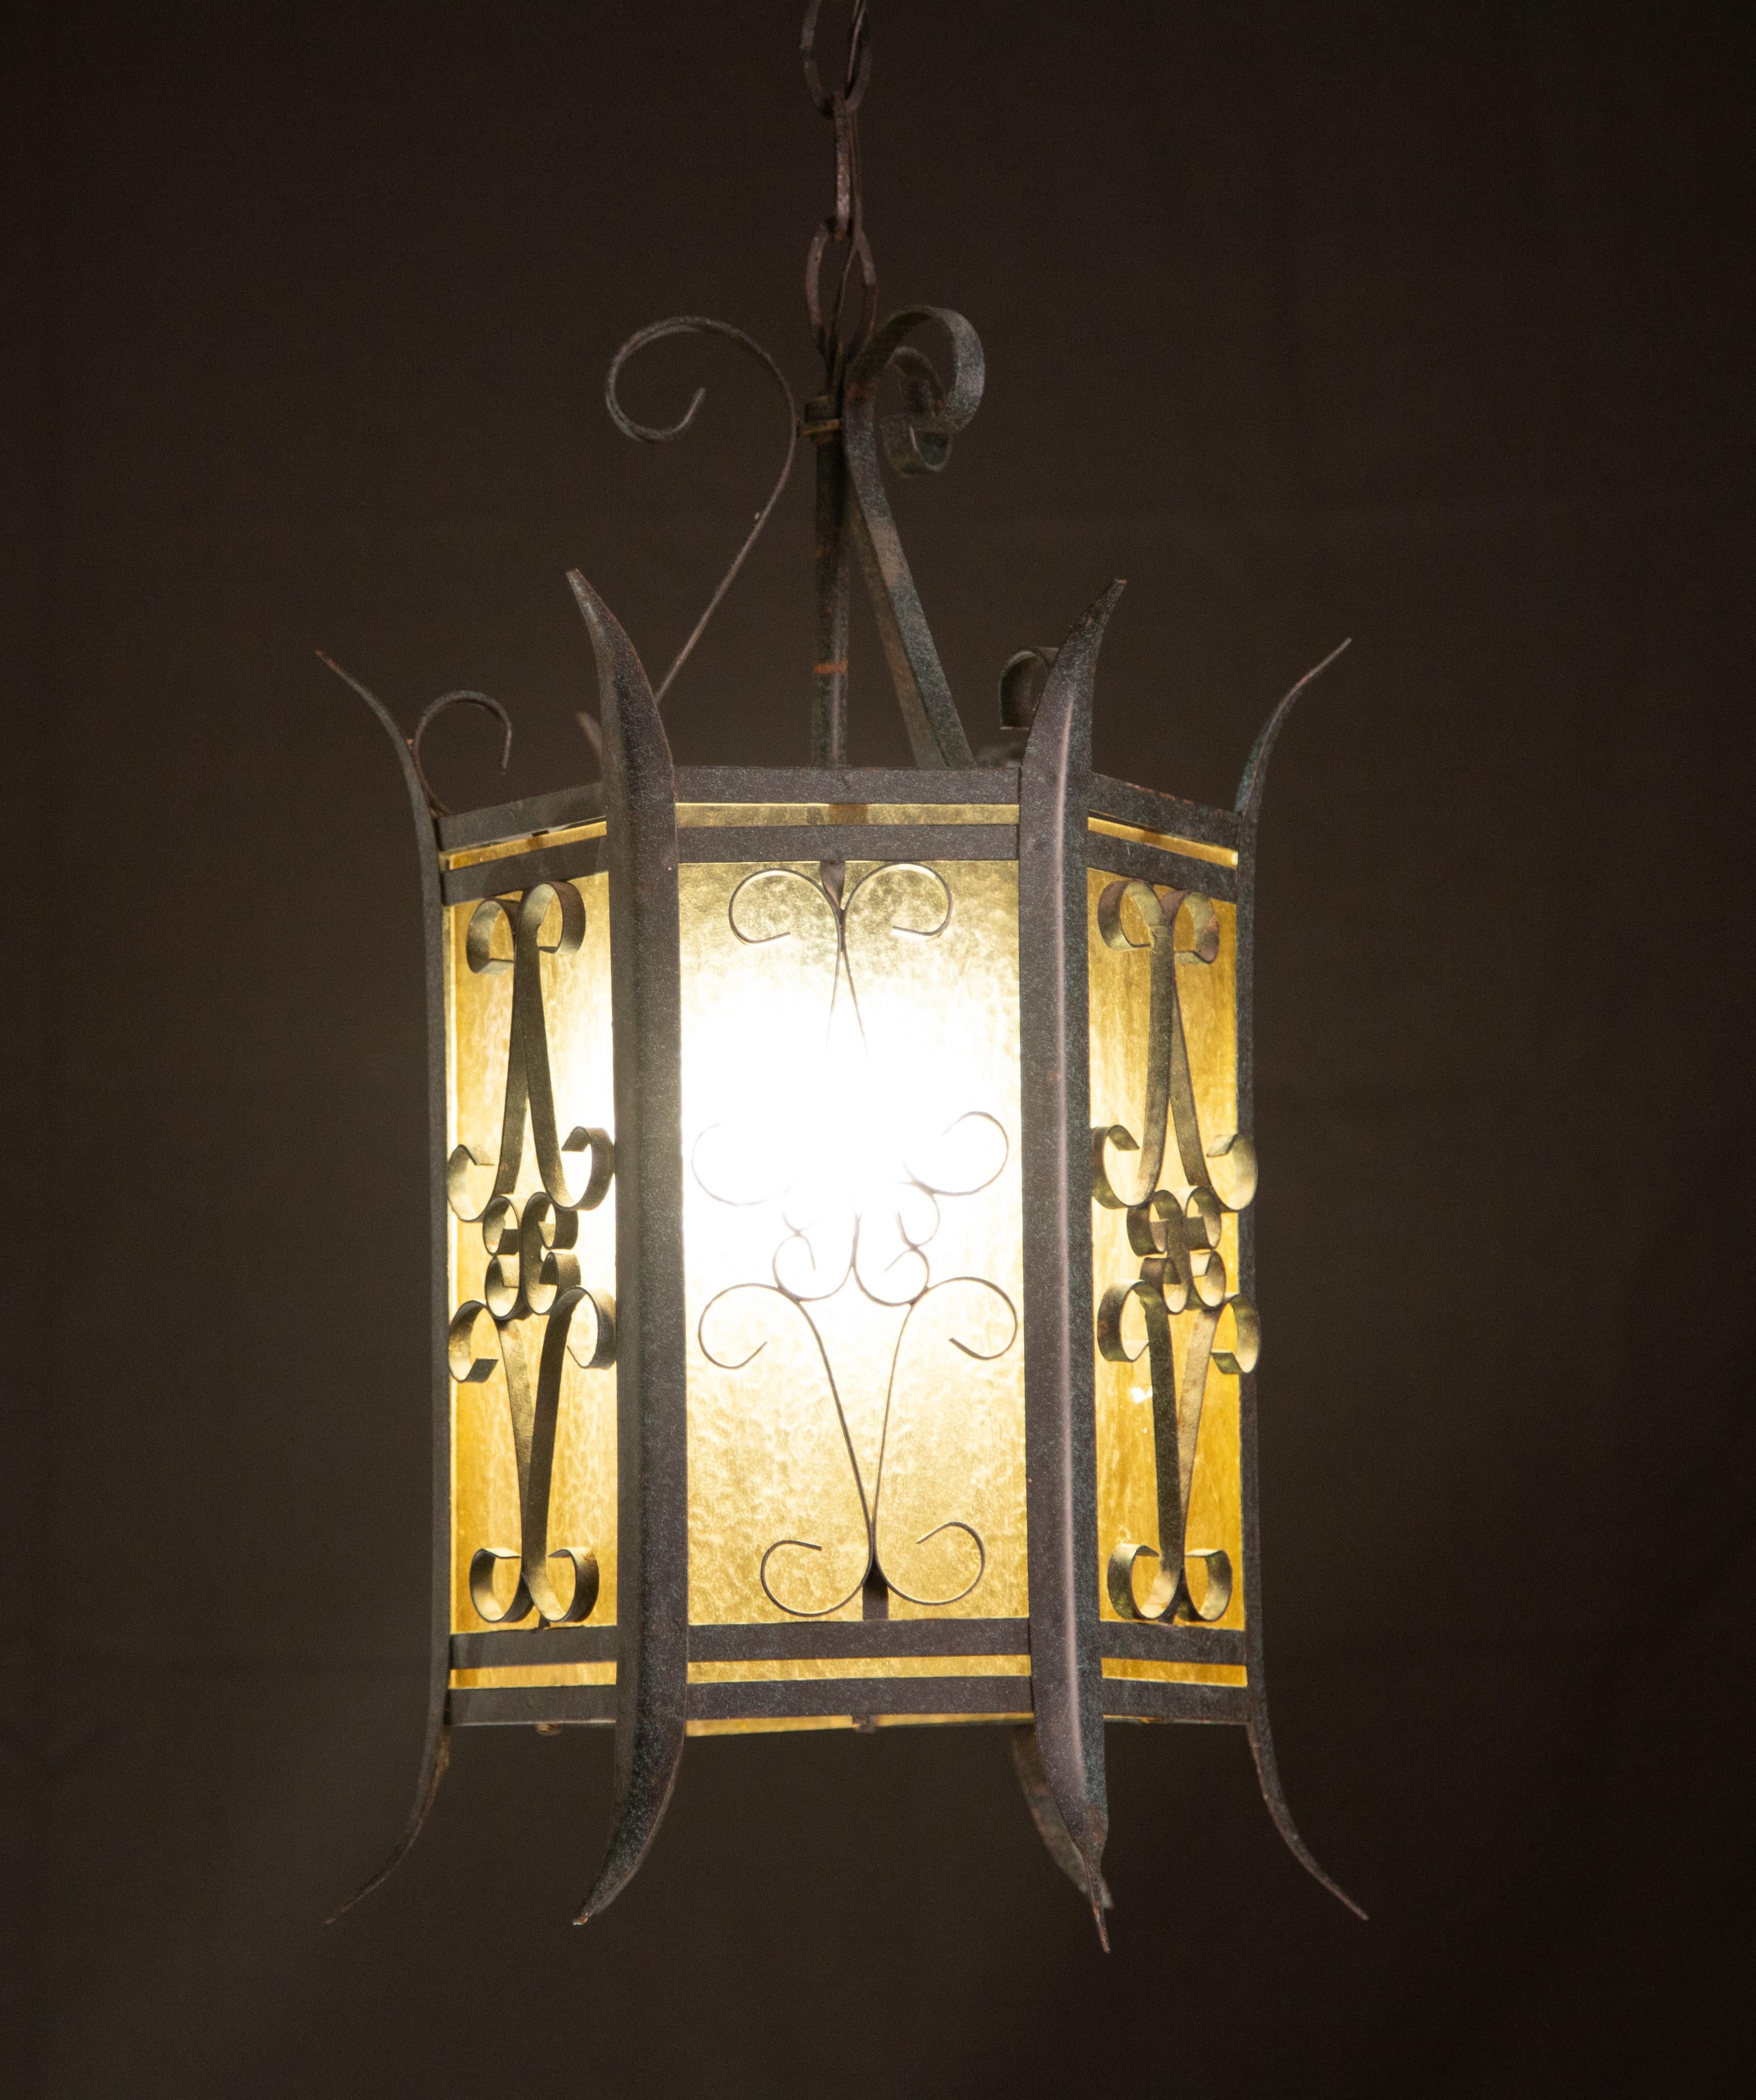 Magnifique lanterne italienne fabriquée dans les années 1960.
Dimensions : 70 cm de hauteur et 28 cm de diamètre.
Permet de monter une lampe e14 de norme européenne.
La structure présente des signes de vieillissement qui lui confèrent une histoire